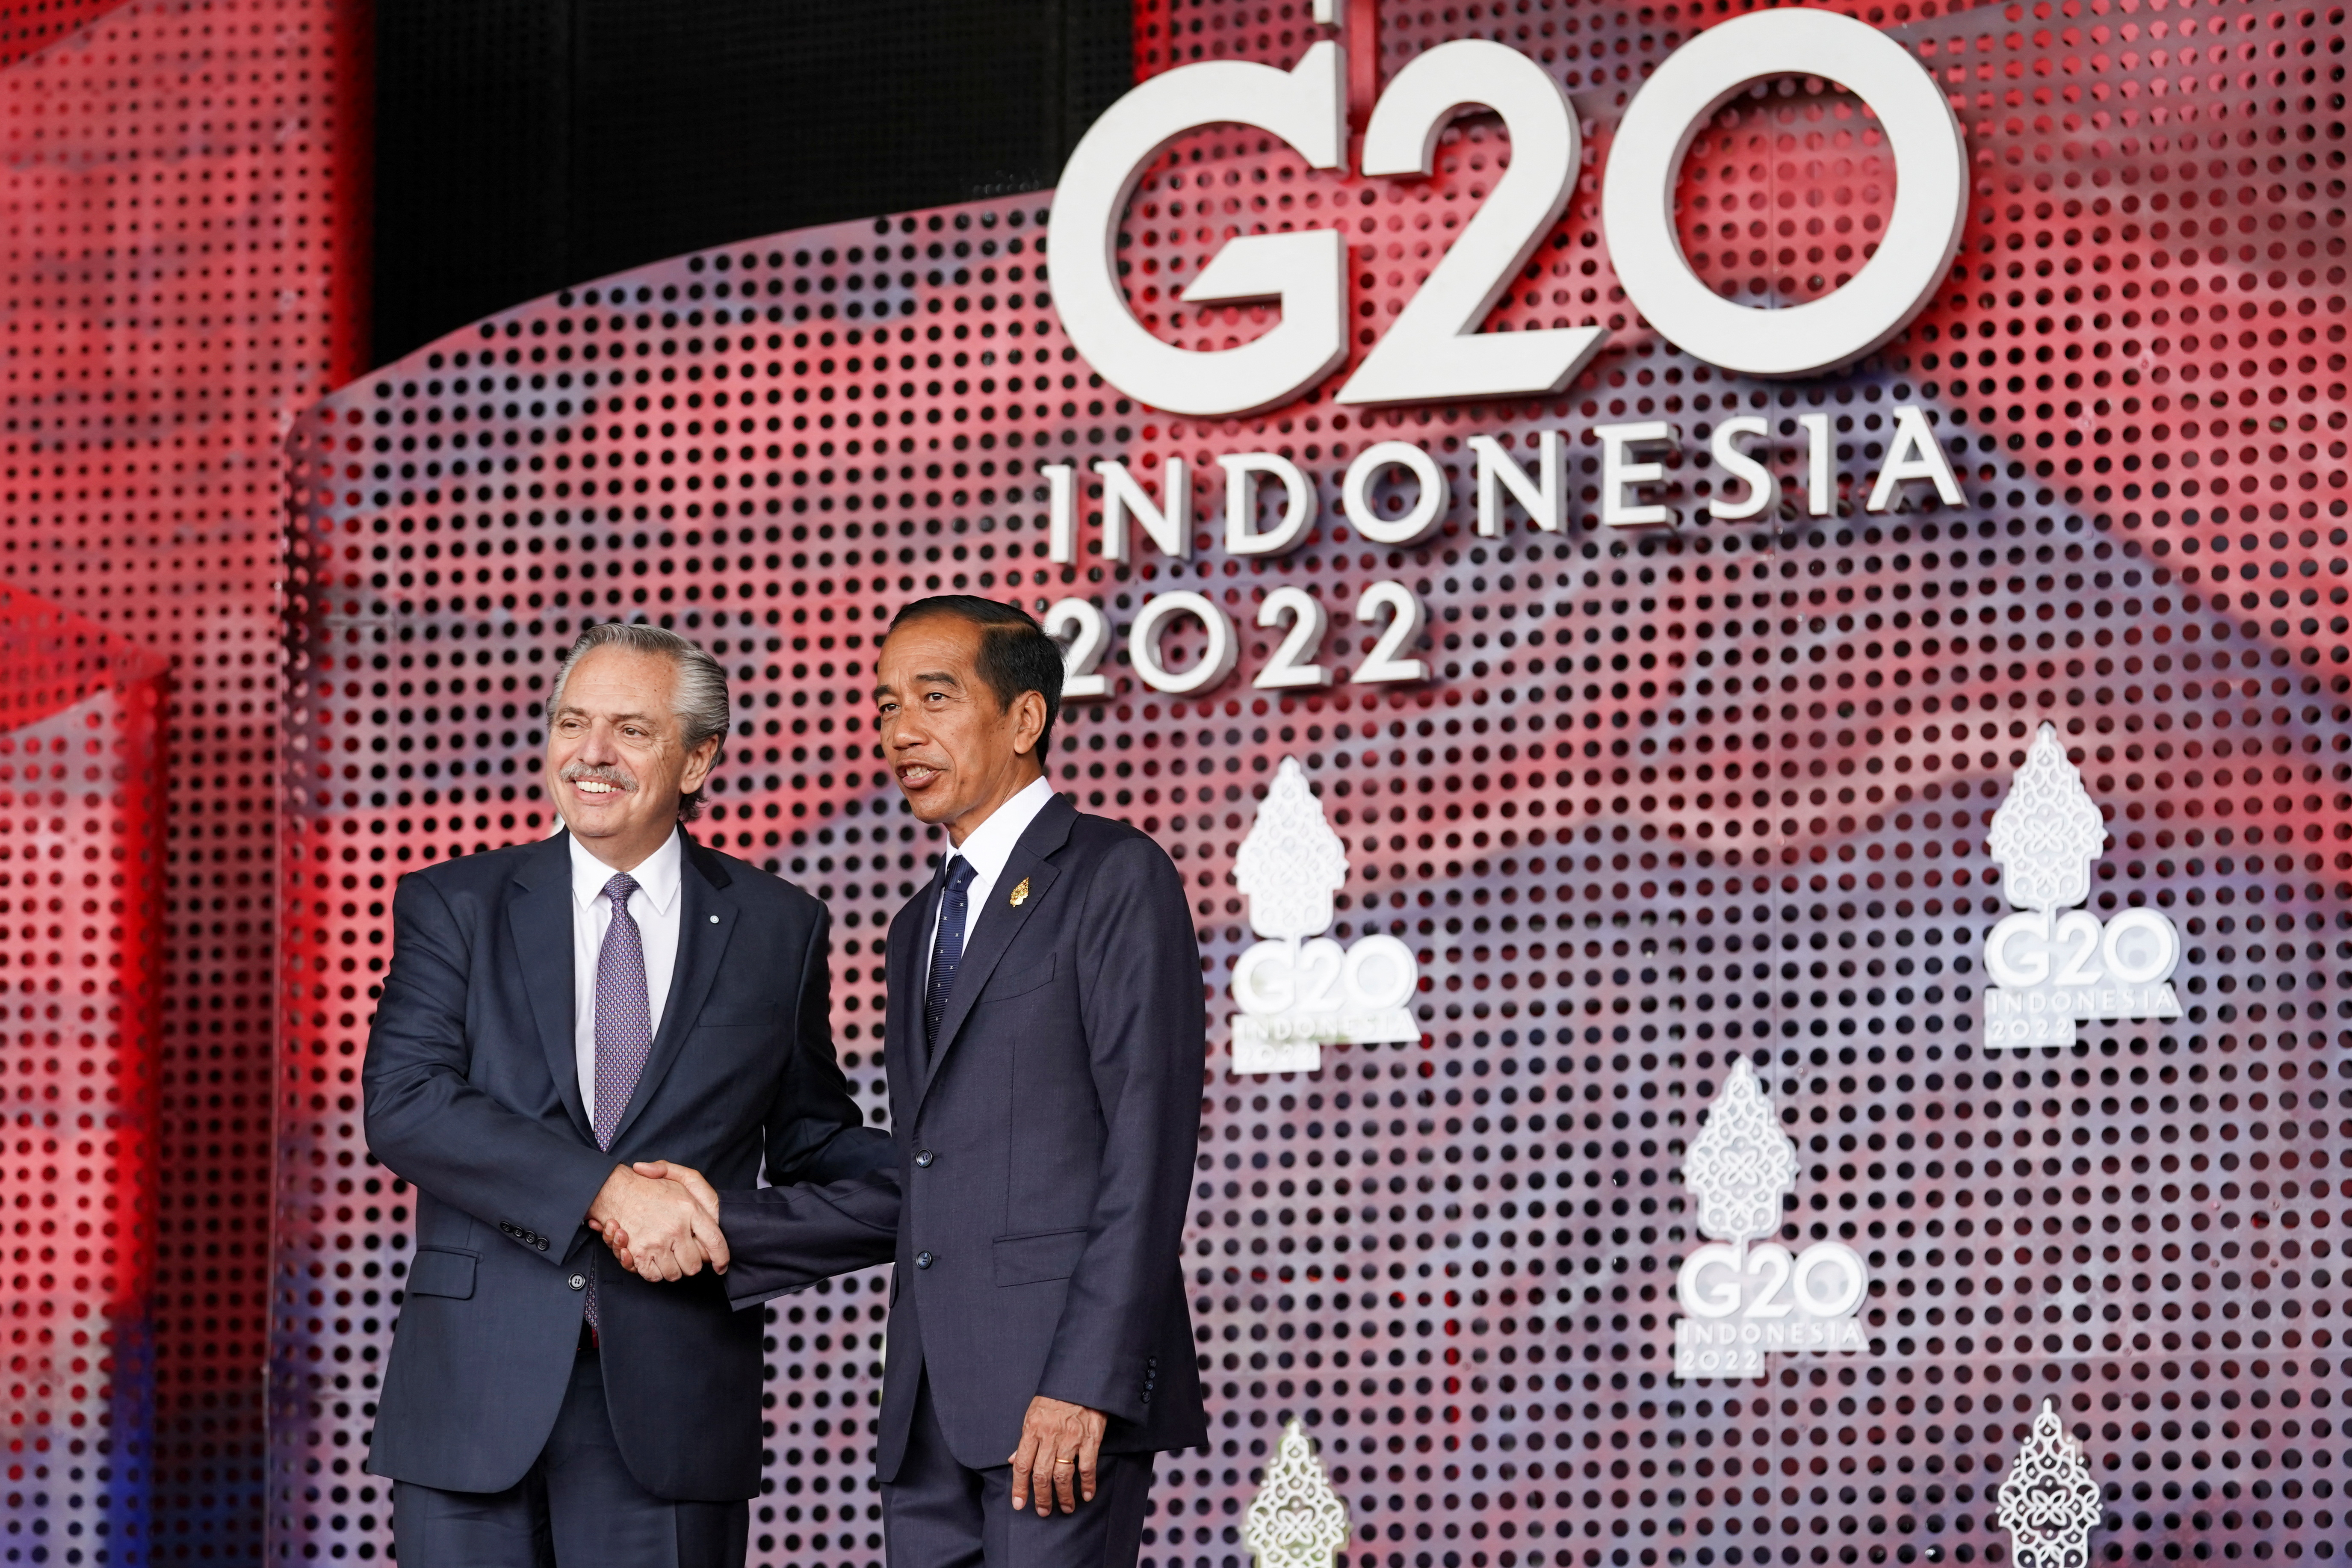 Alberto Fernández sonríe junto a Joko Widodo (presidente de Indonesia) minutos antes de descompensarse (Foto: Reuters)